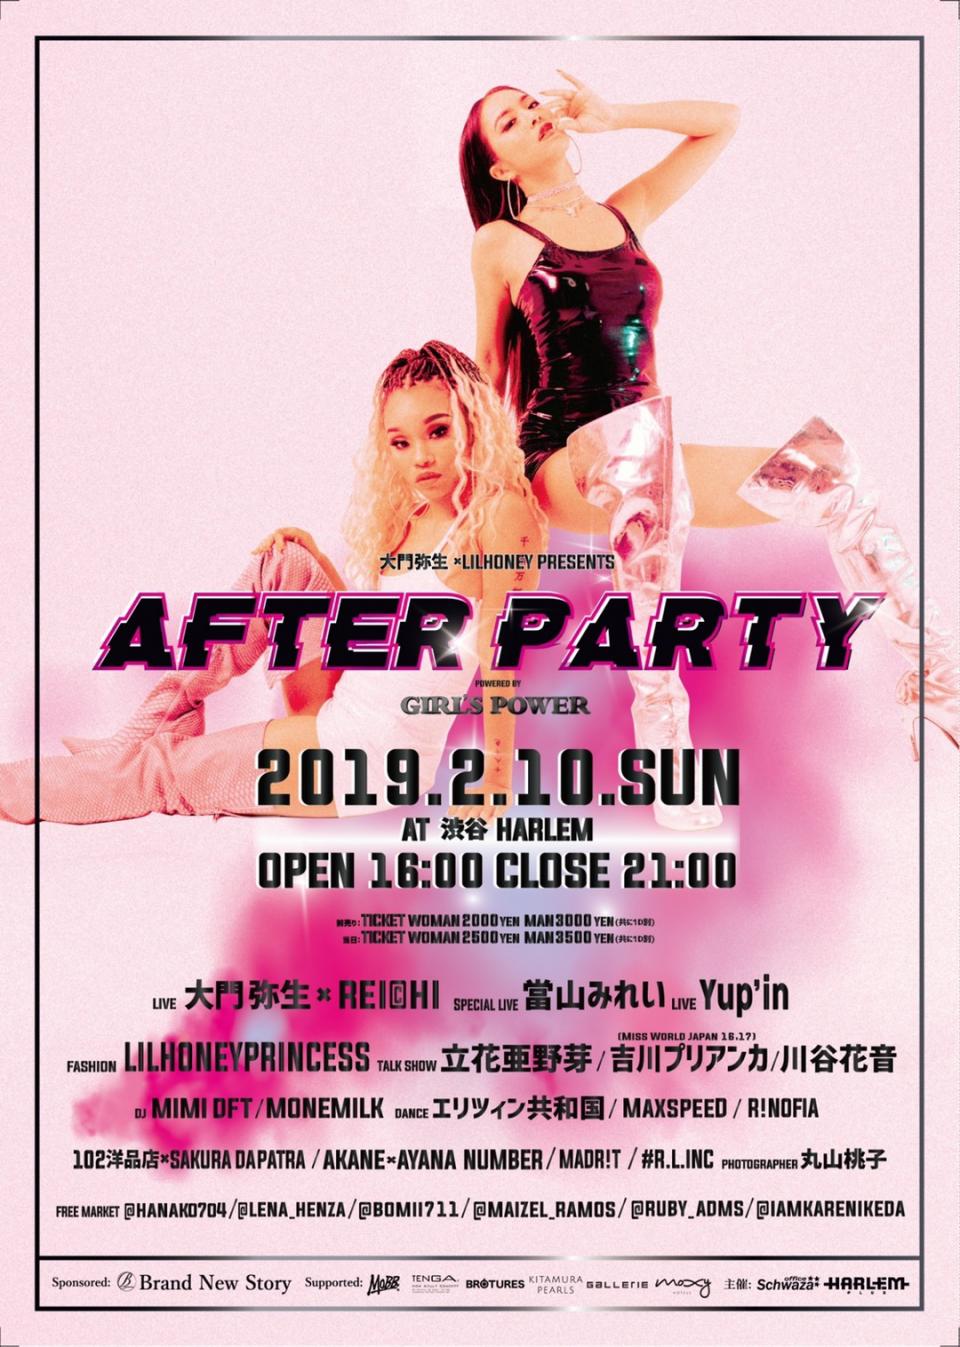 2019/2/10 主催イベント”AFTER PARTY”を開催!